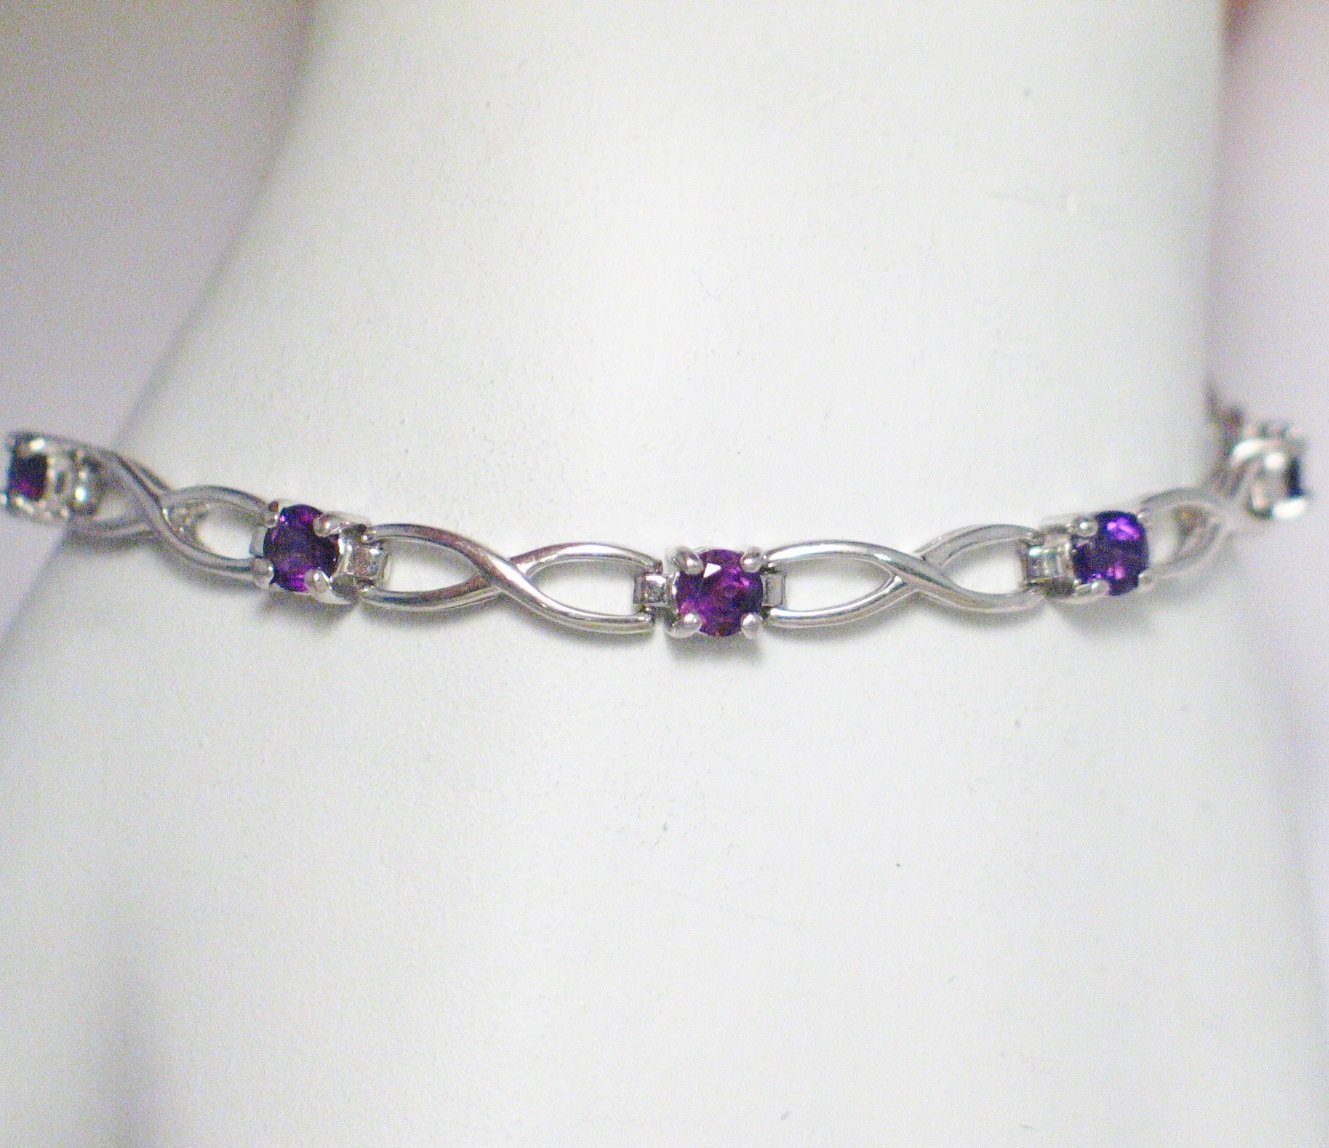 Bracelet | Womens 7.5" Sterling Silver Purple Amethyst Stone Tennis Bracelet | Discount Fine Jewelry online at www.Blingschlingers.com 